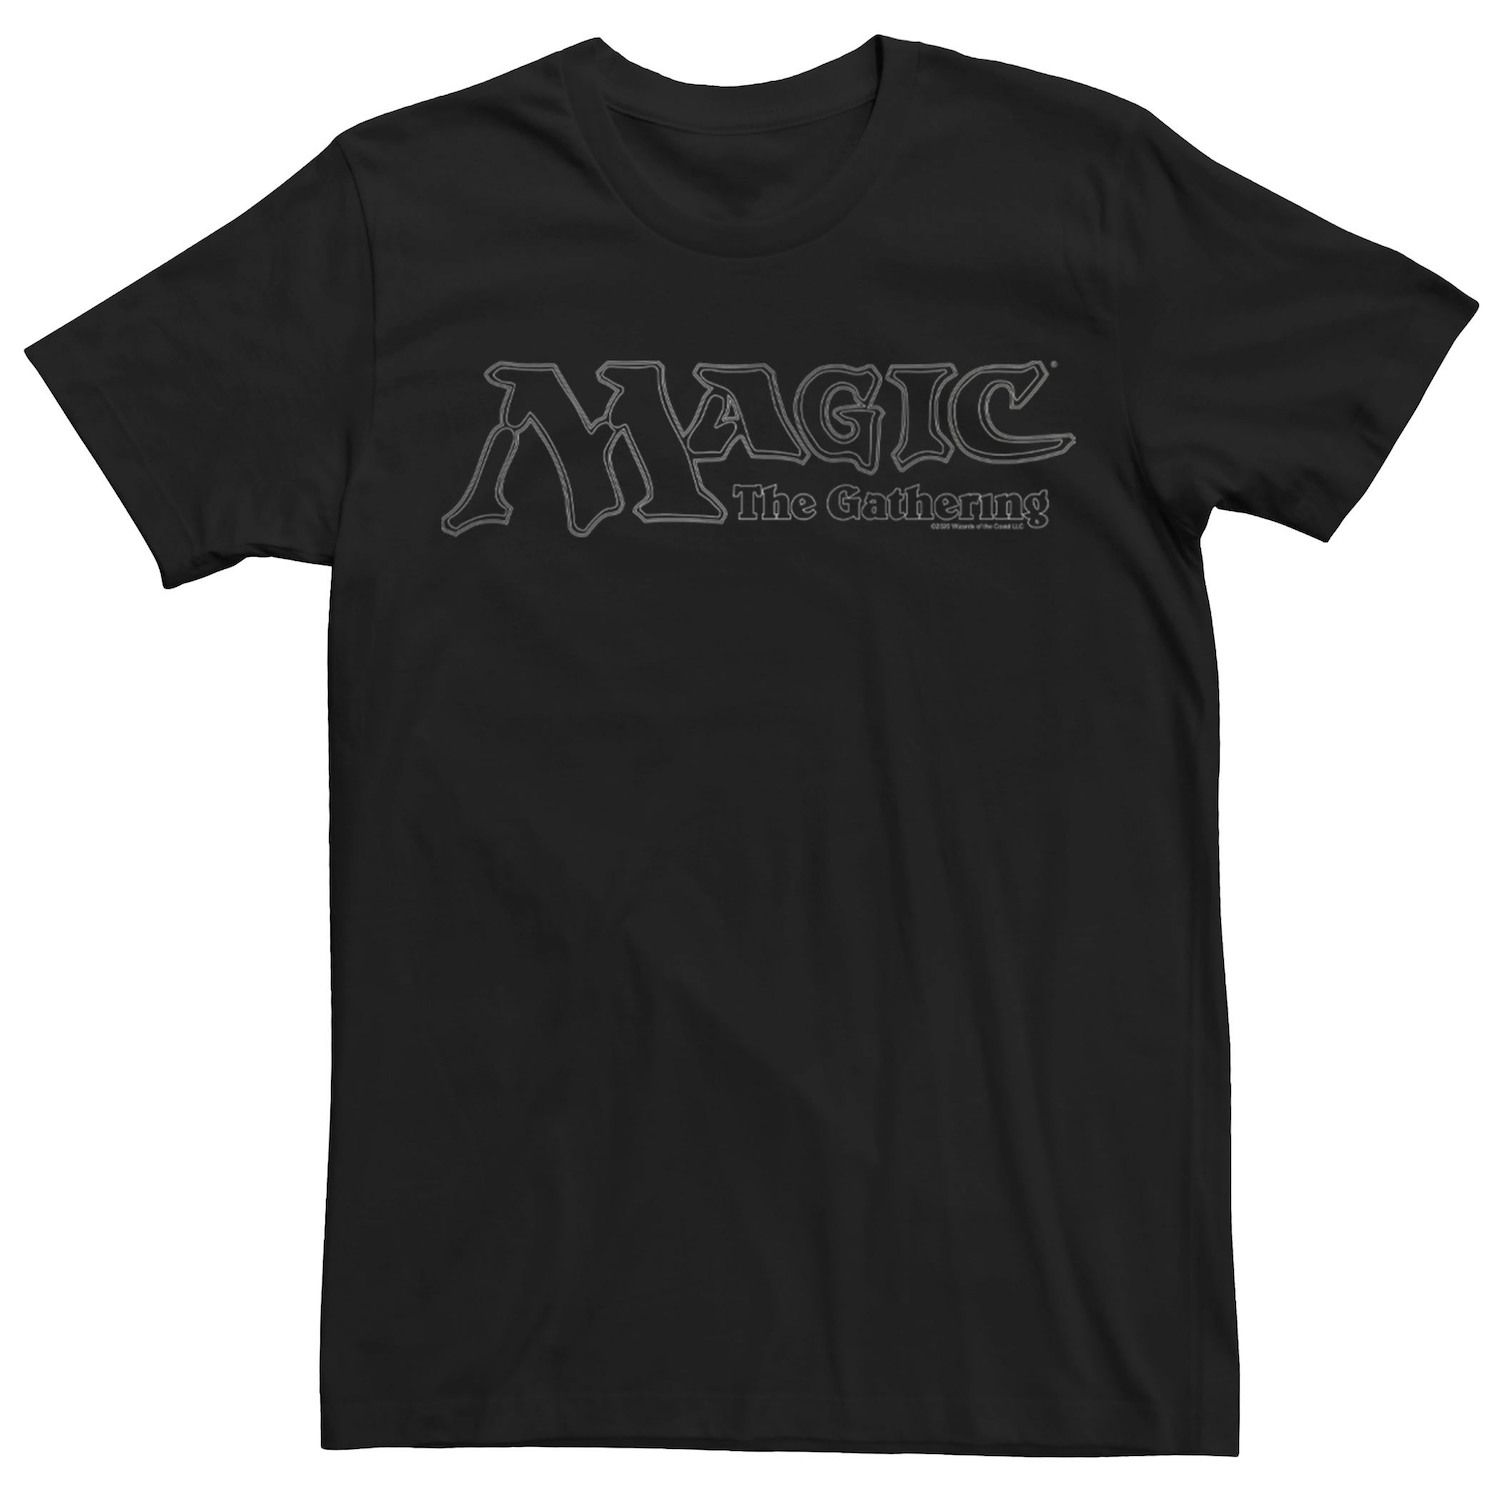 Мужская футболка Magic The Gathering Classic с логотипом Licensed Character